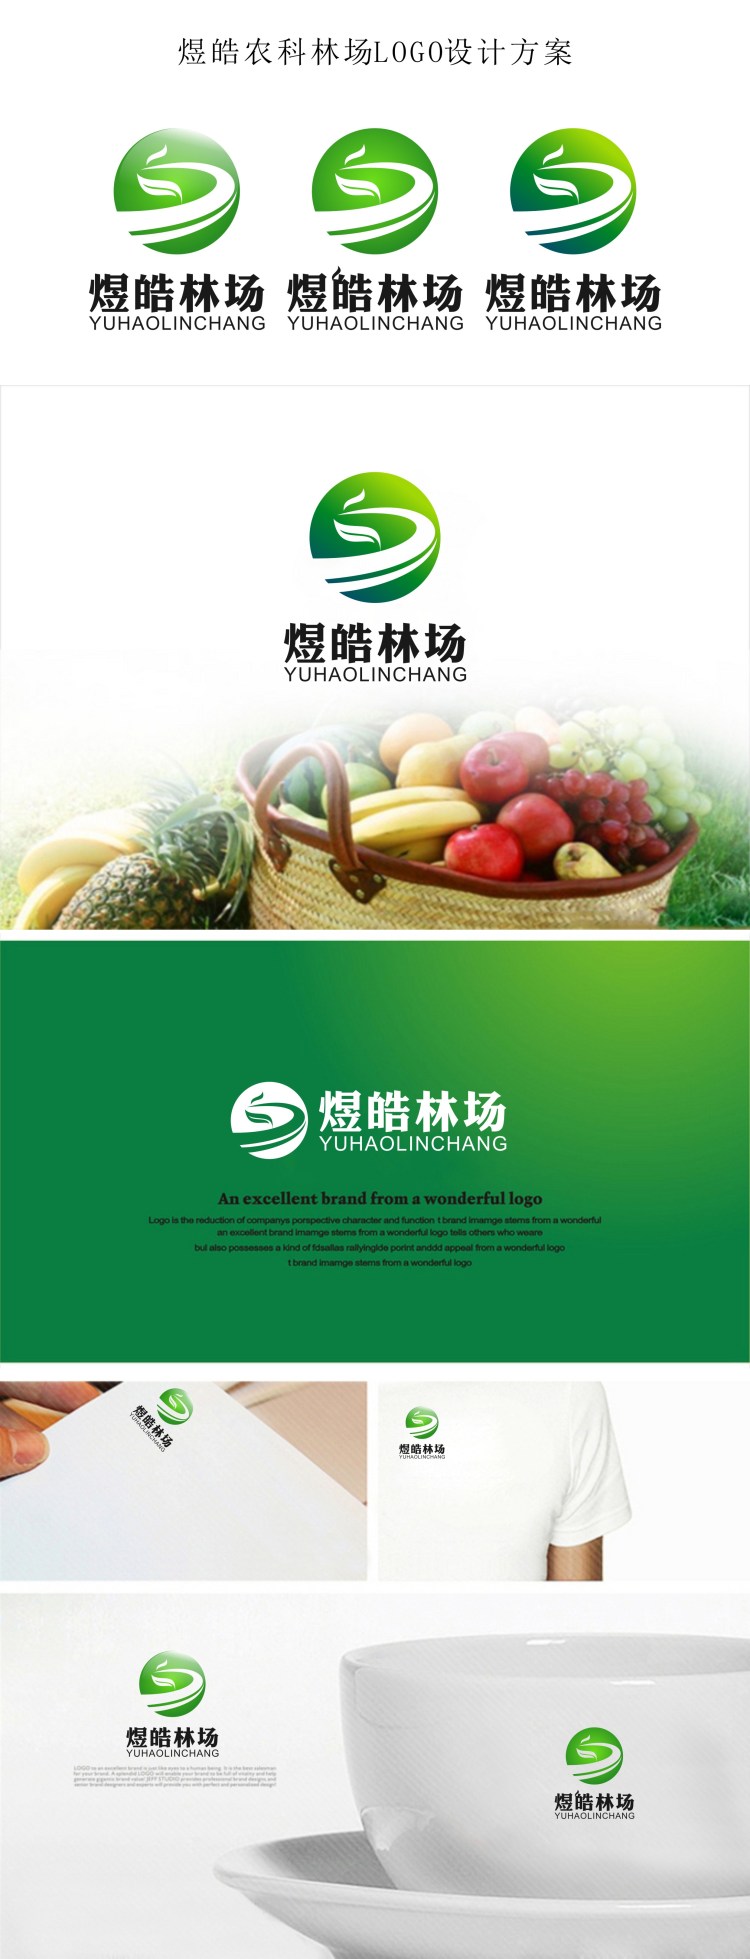 煜皓生态农业科技有限公司标志效果展示